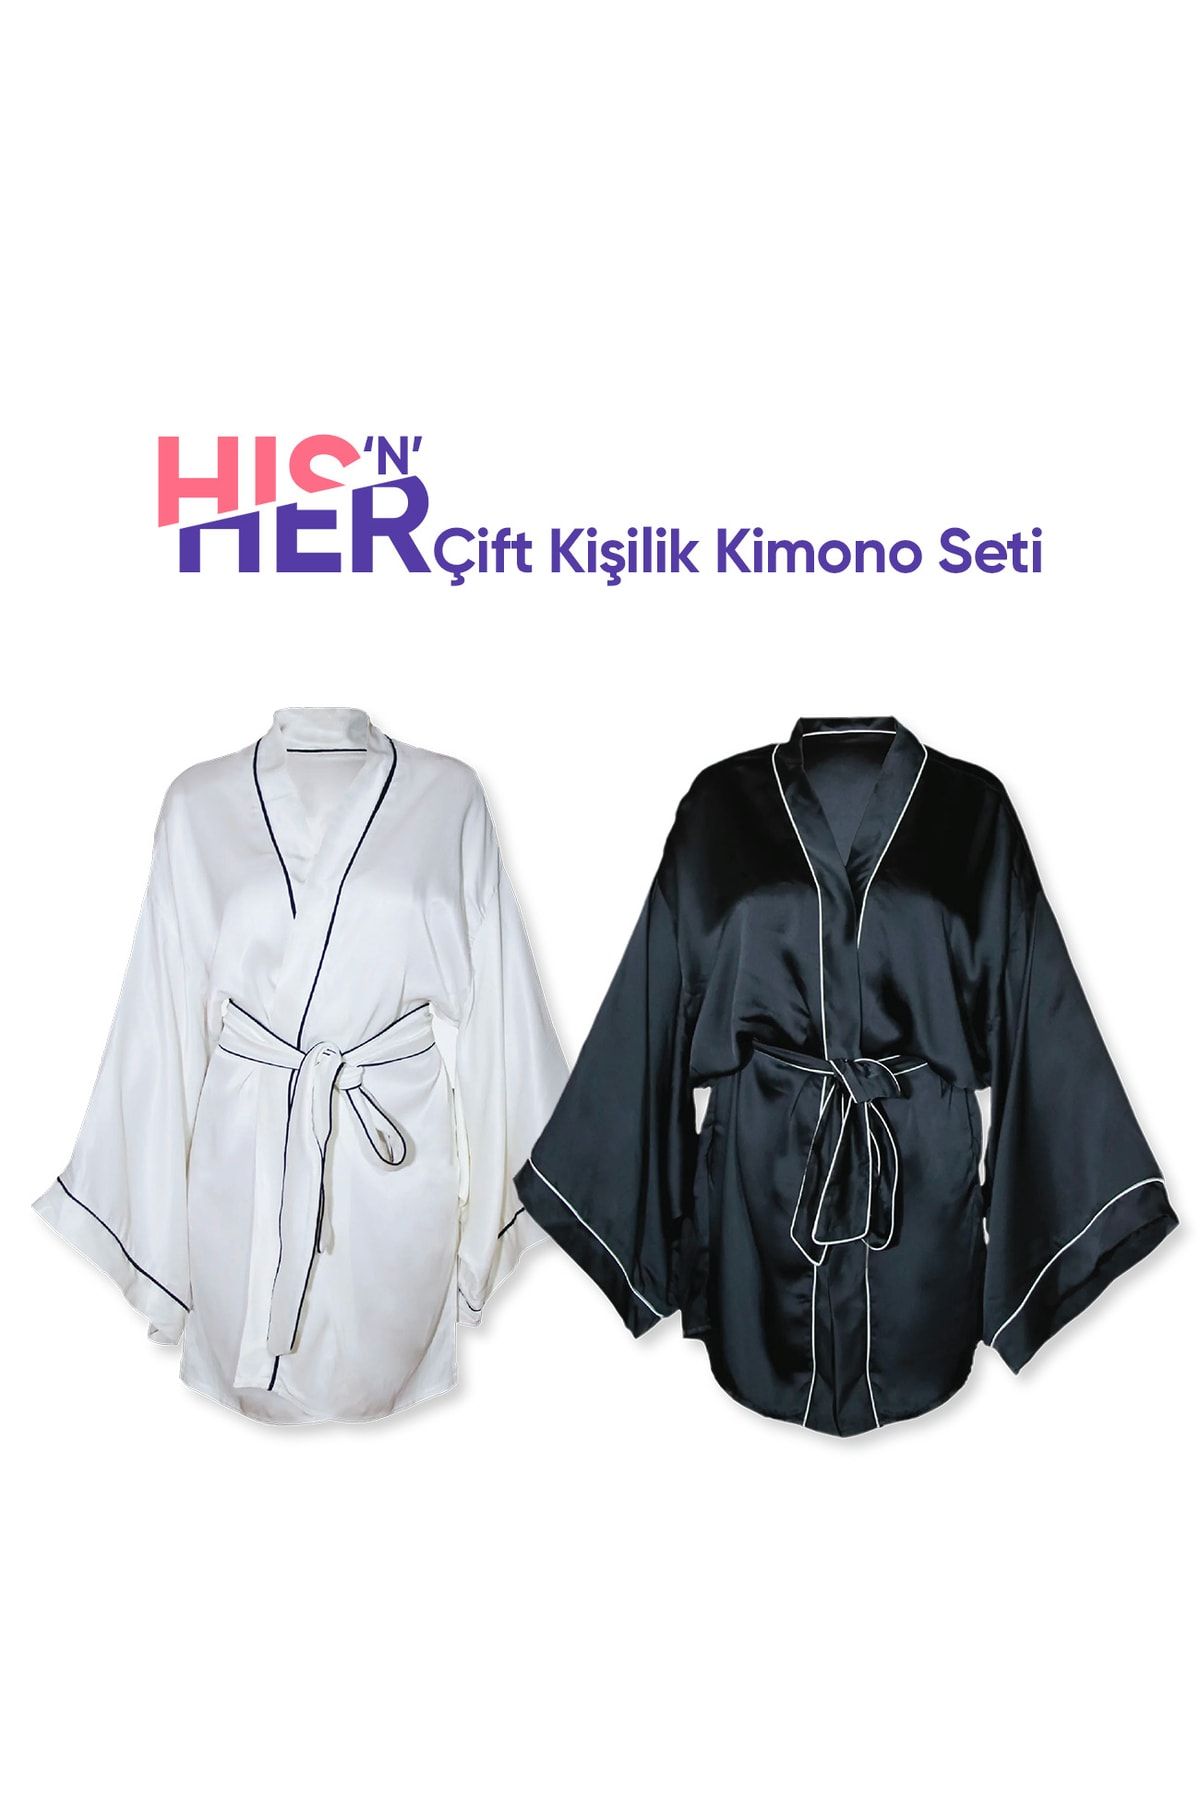 Beauty Pillow Hers & His Çift Kişilik Kimono Seti (beyaz & Siyah)